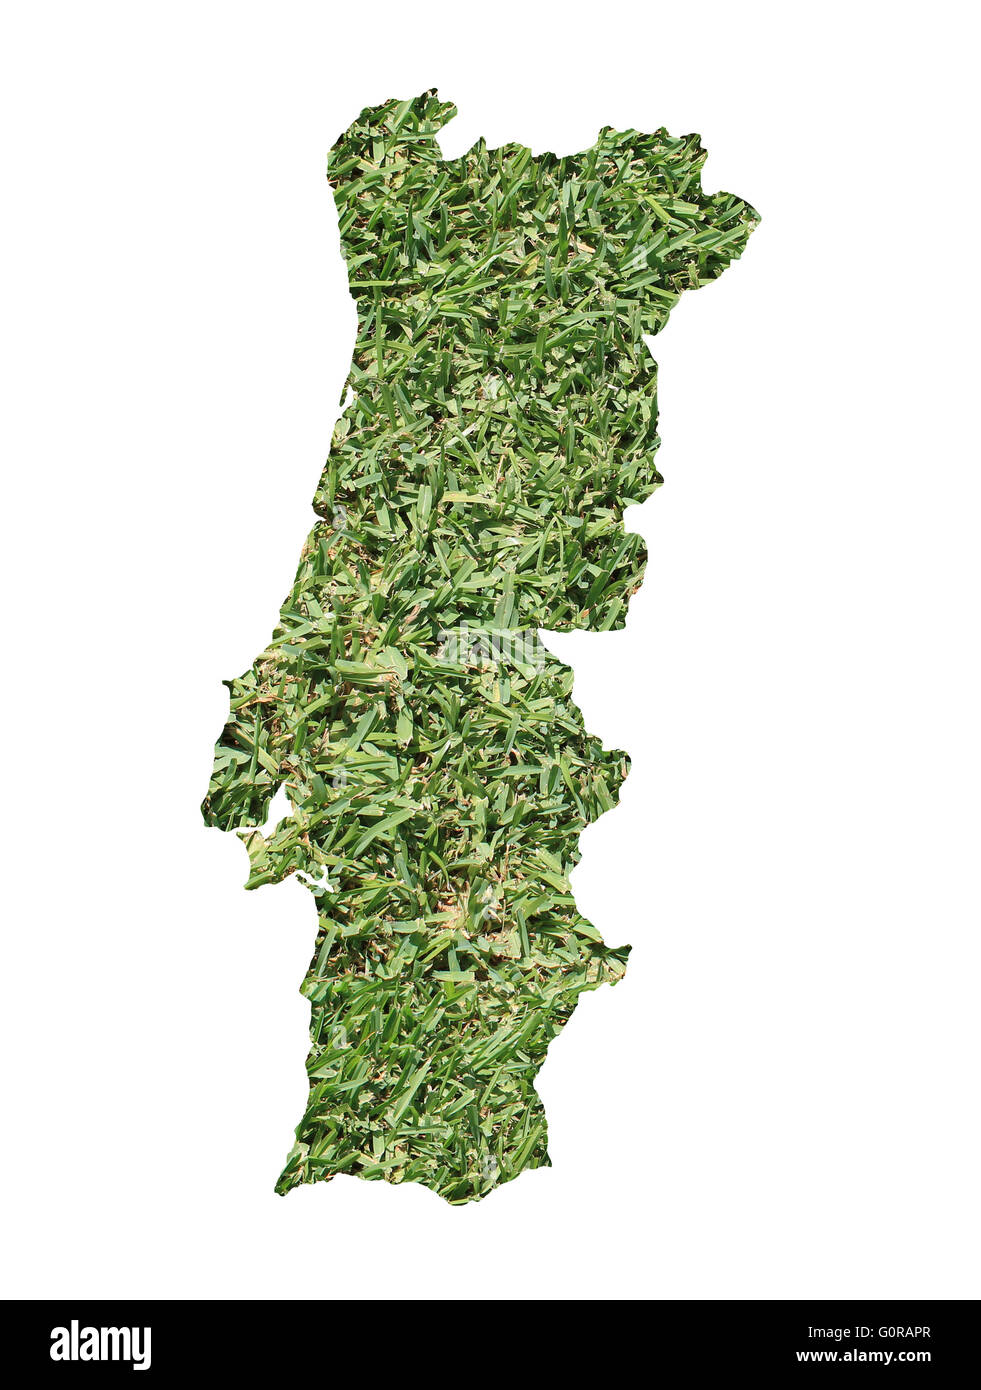 Mappa di Portogallo riempito con erba verde, ambientale e concetto ecologico. Foto Stock